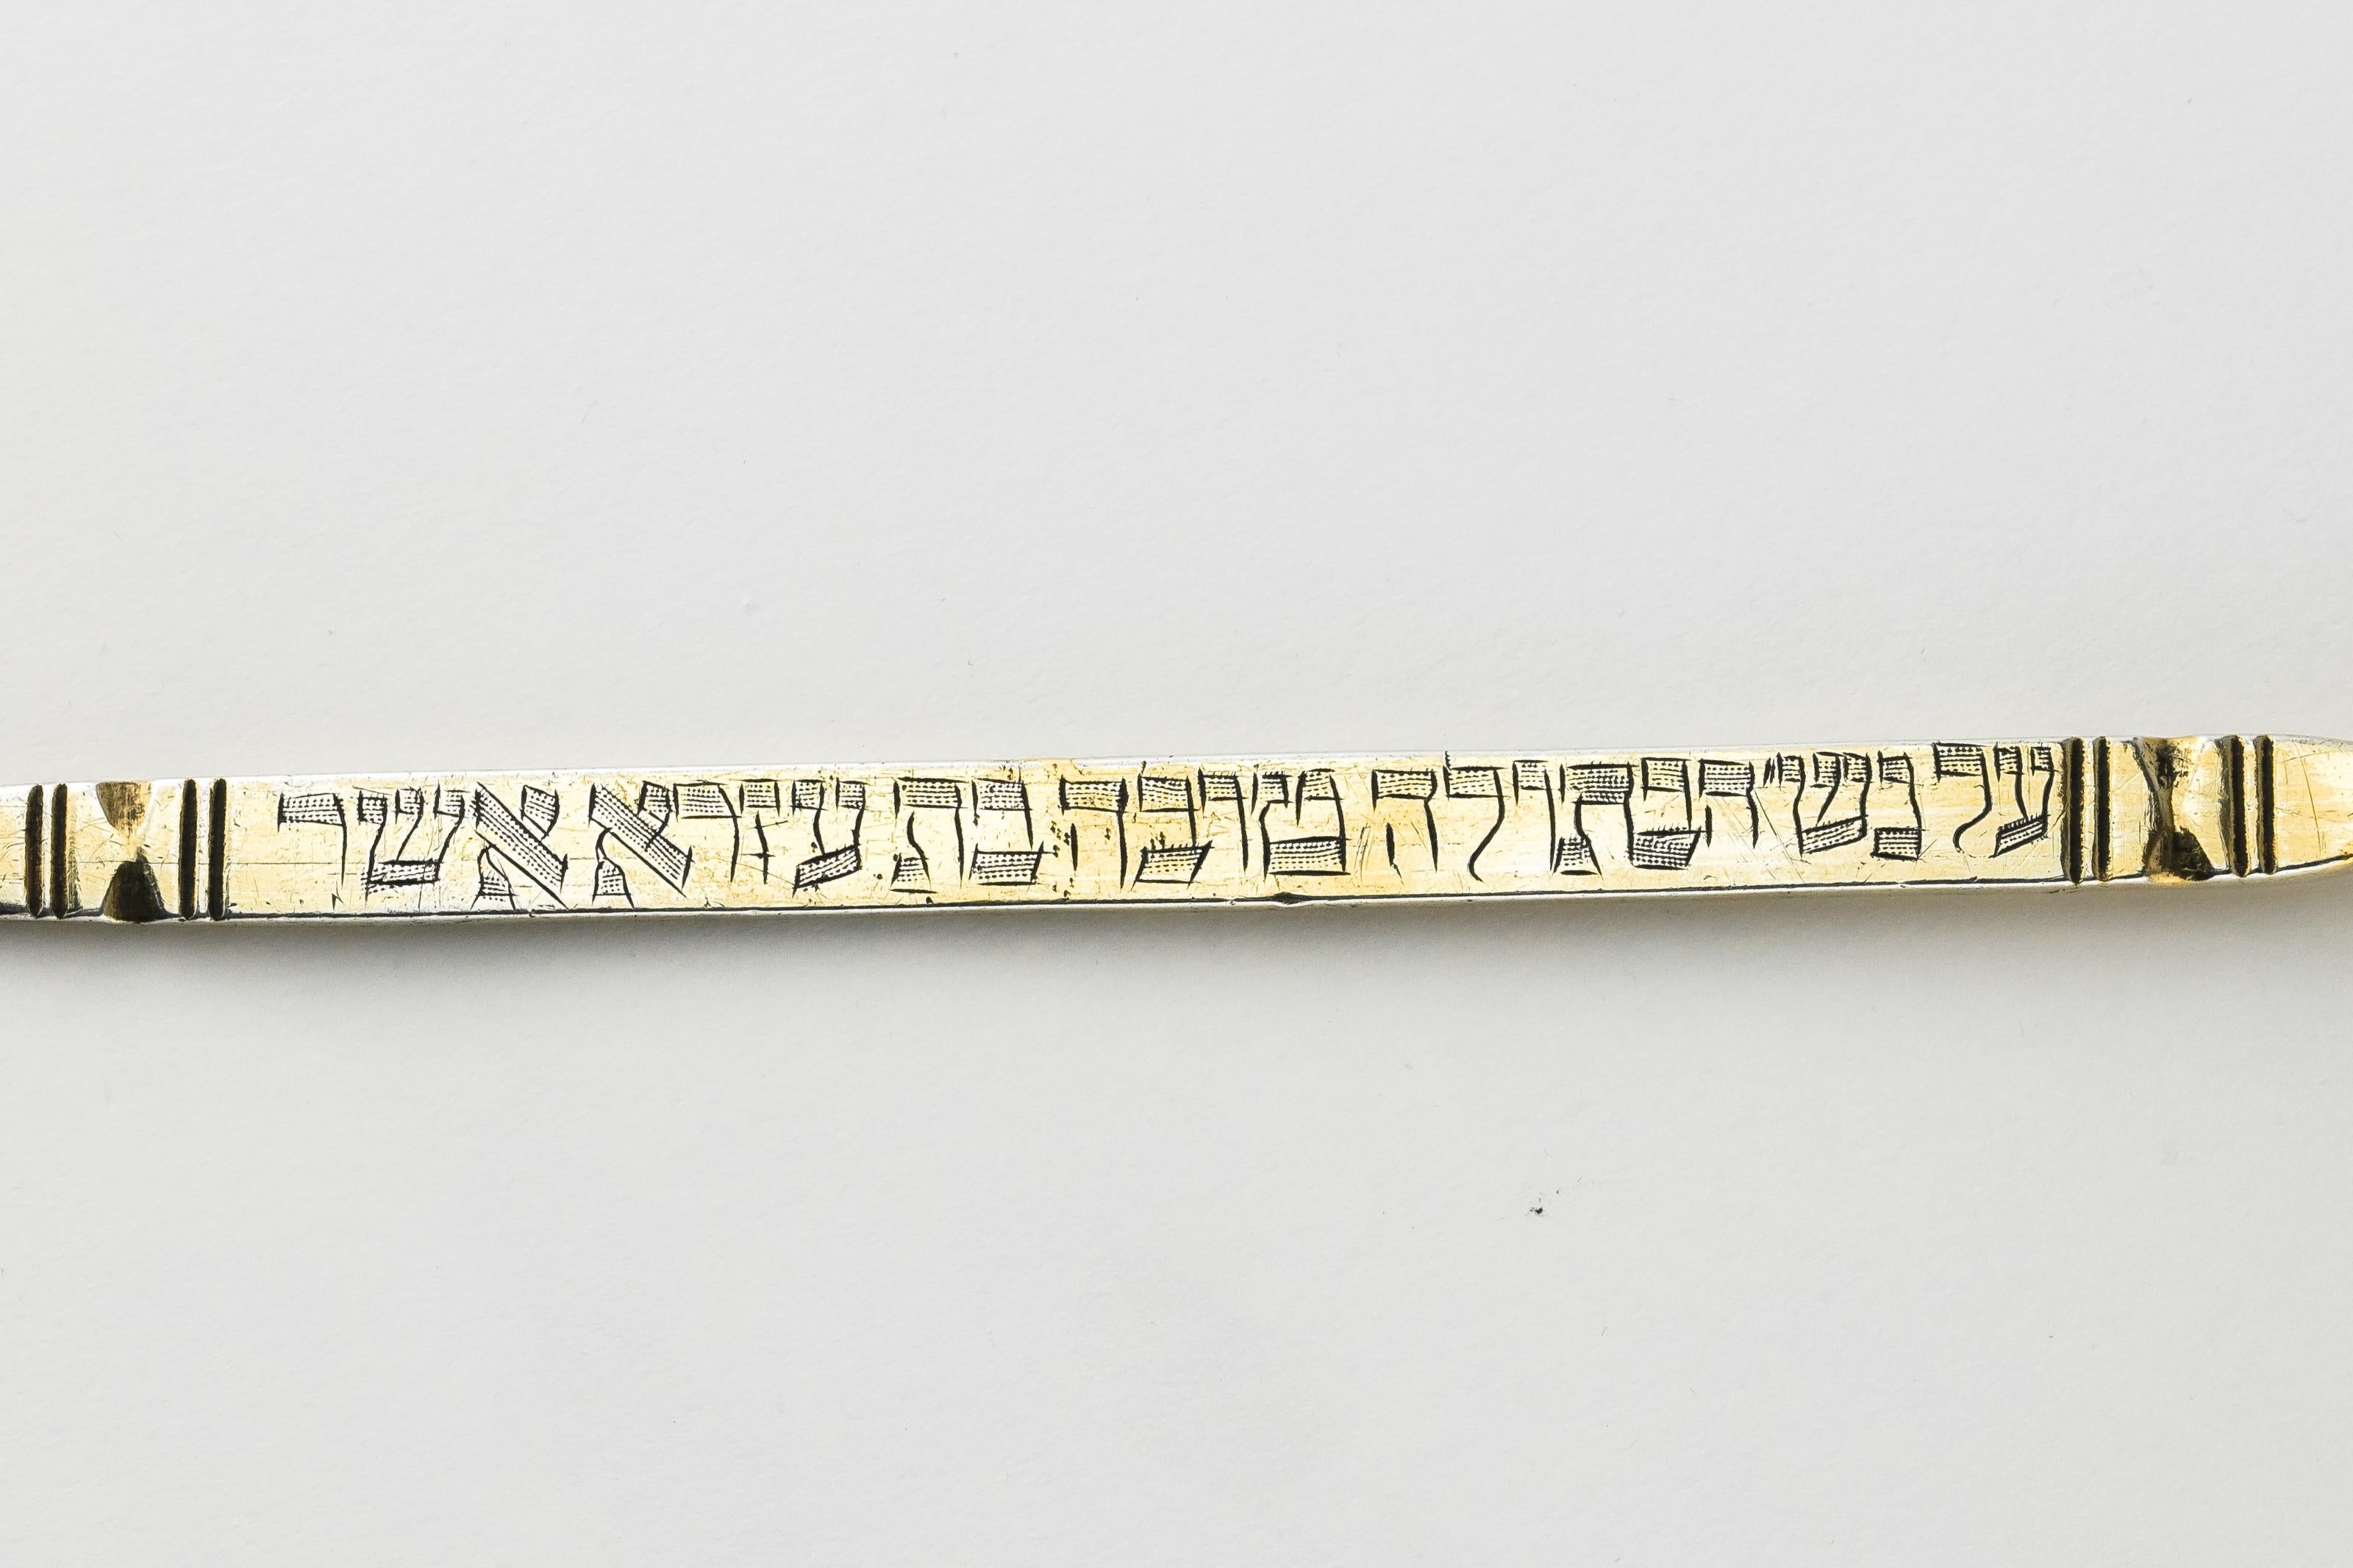 Handgefertigter Thora-Zeiger (Yad) aus vergoldetem Silber, wahrscheinlich Marokko, um 1880.
In hebräischer Sprache eingraviert: 